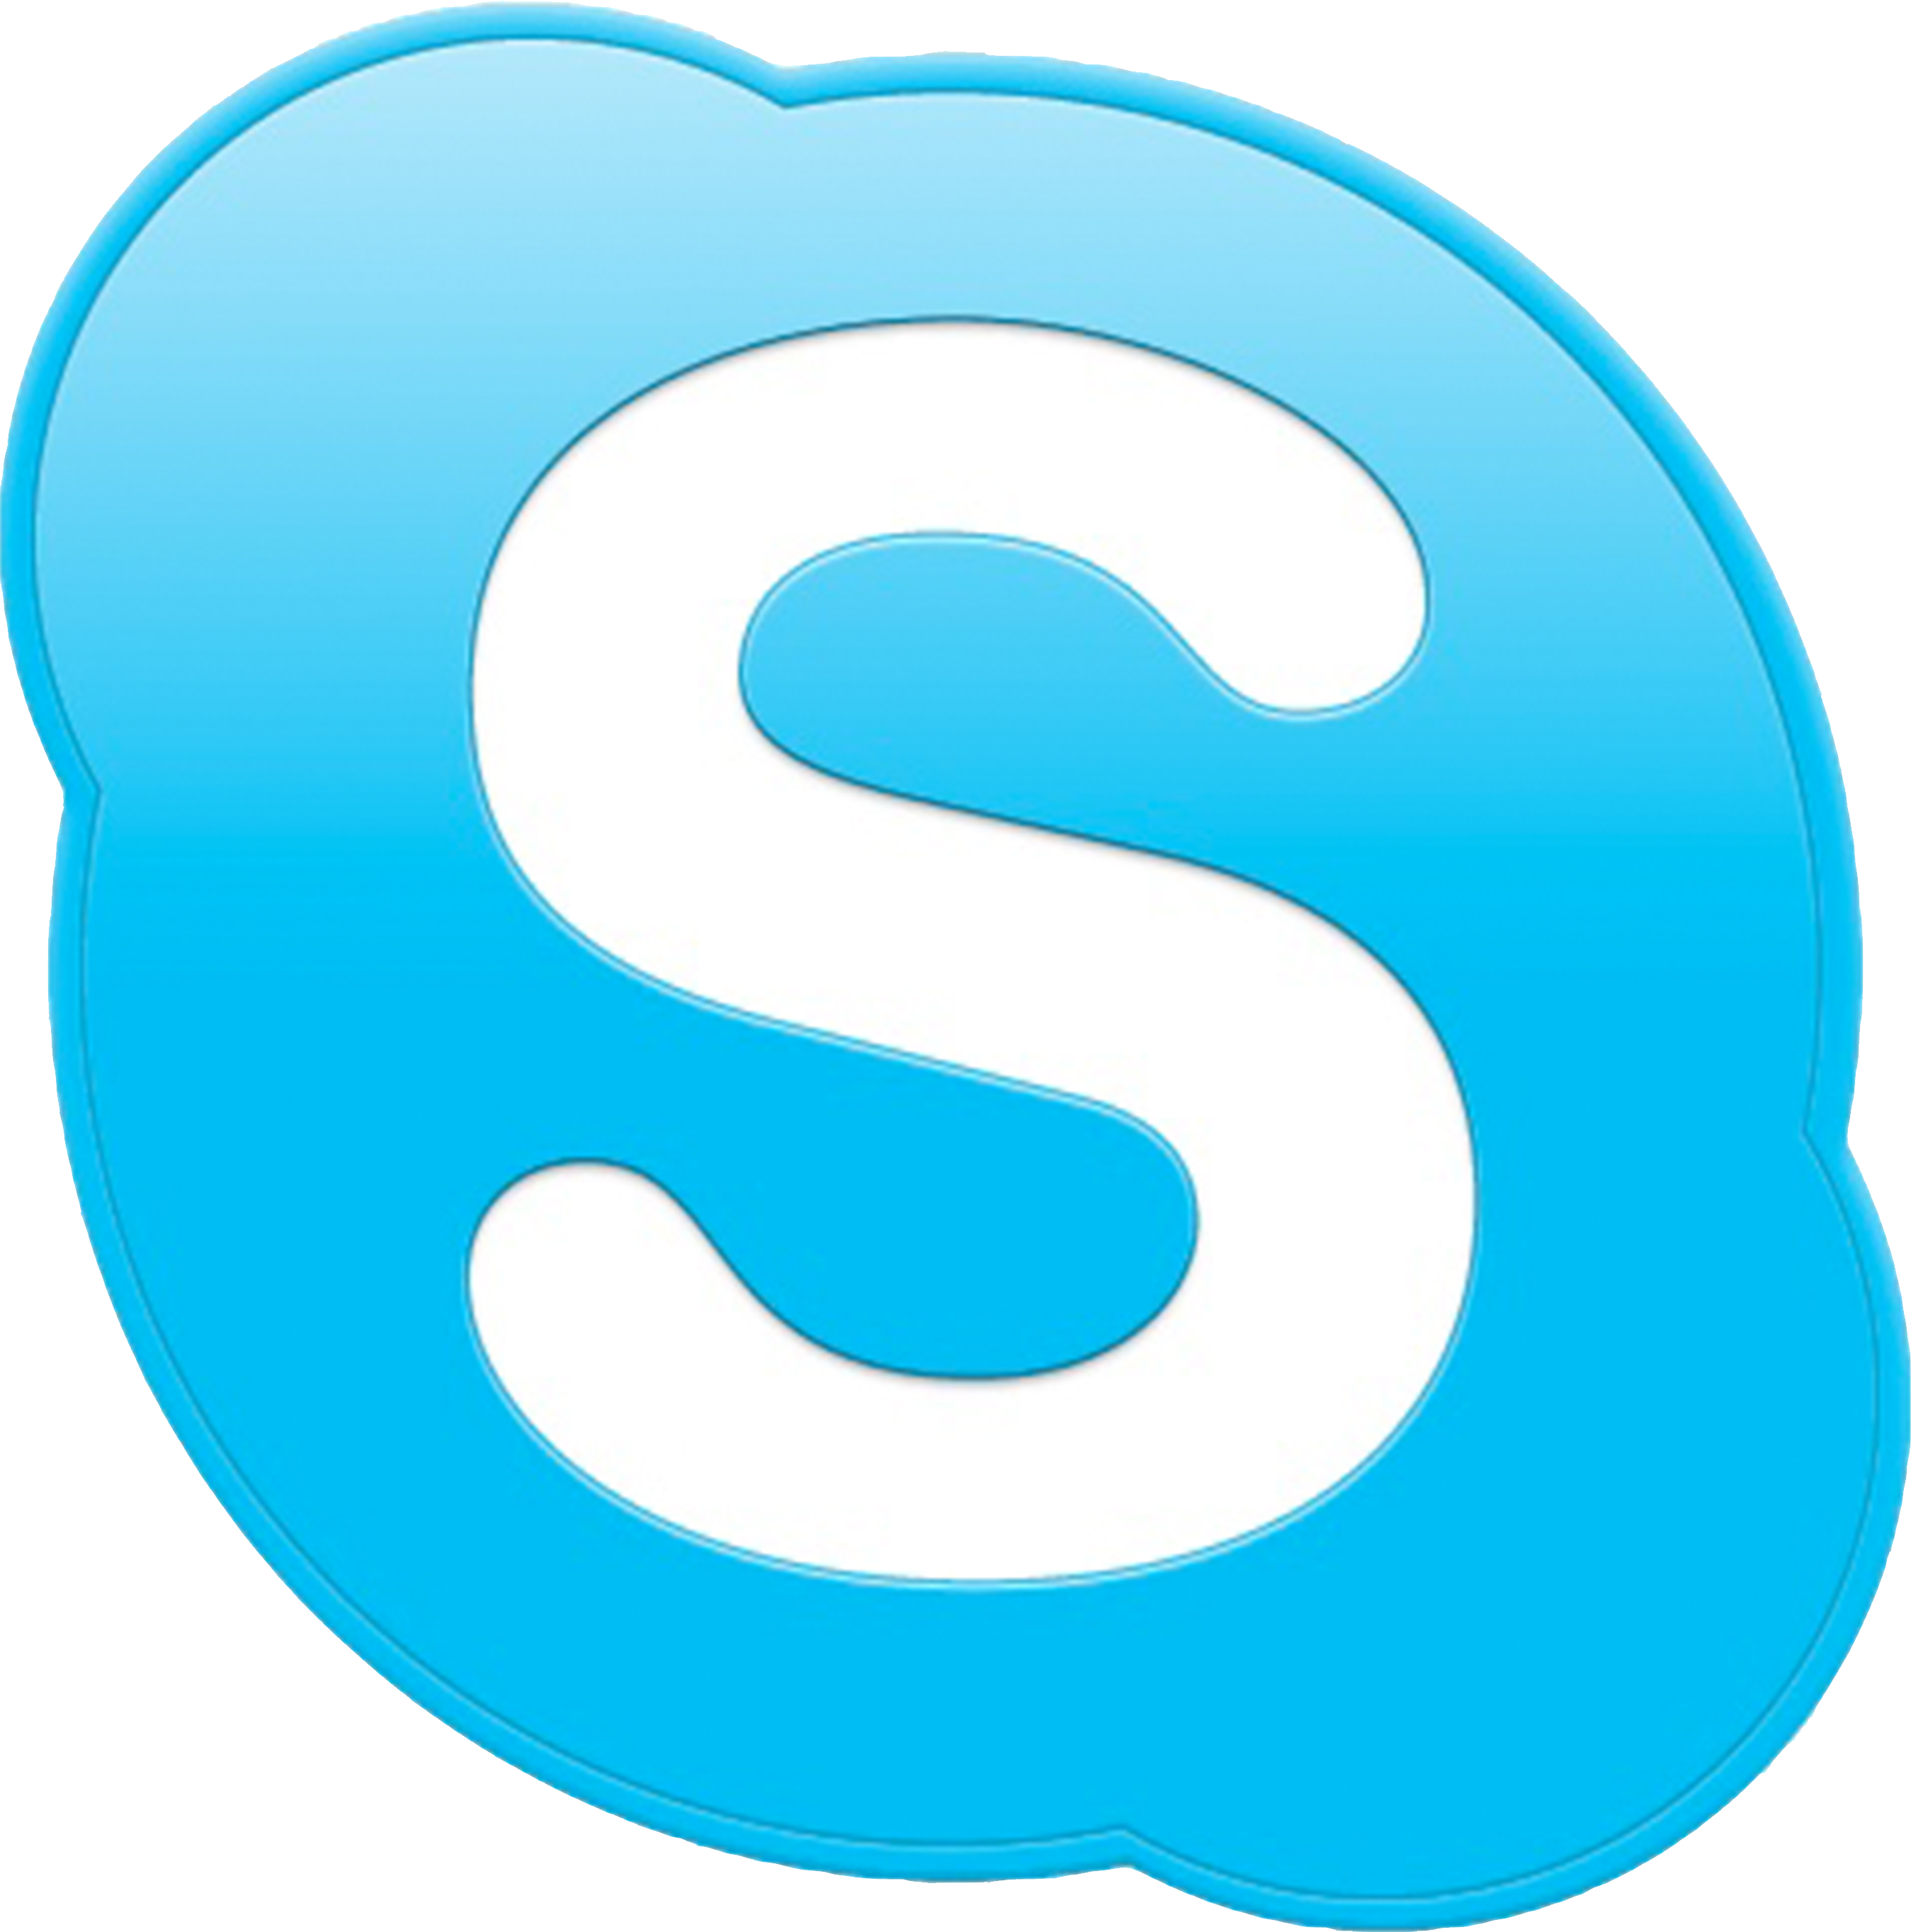 Skype Watermark Png - Skype L